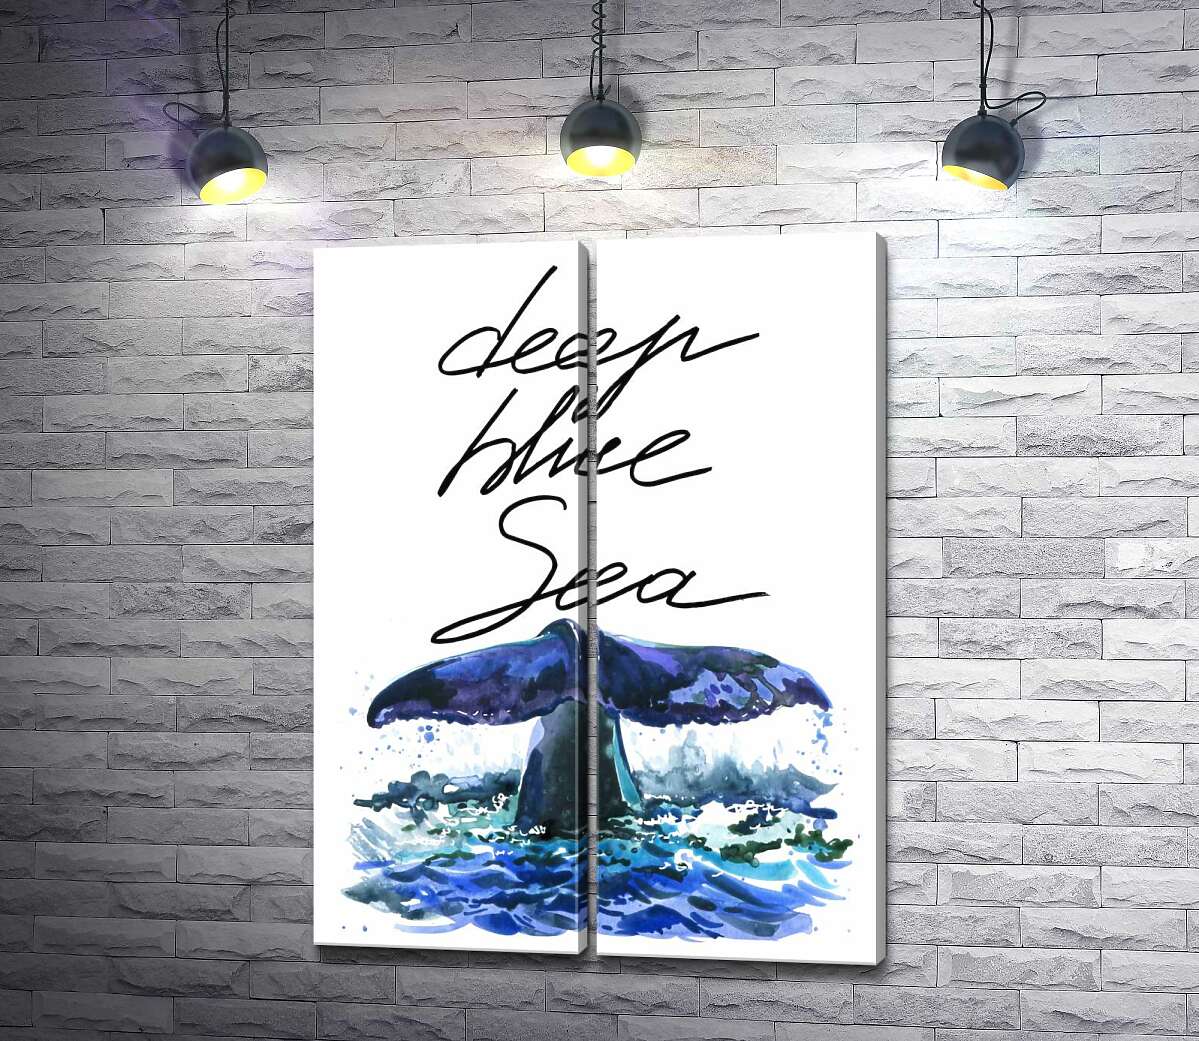 модульна картина Хвіст кита над водною поверхнею поряд з написом "deep blue sea"